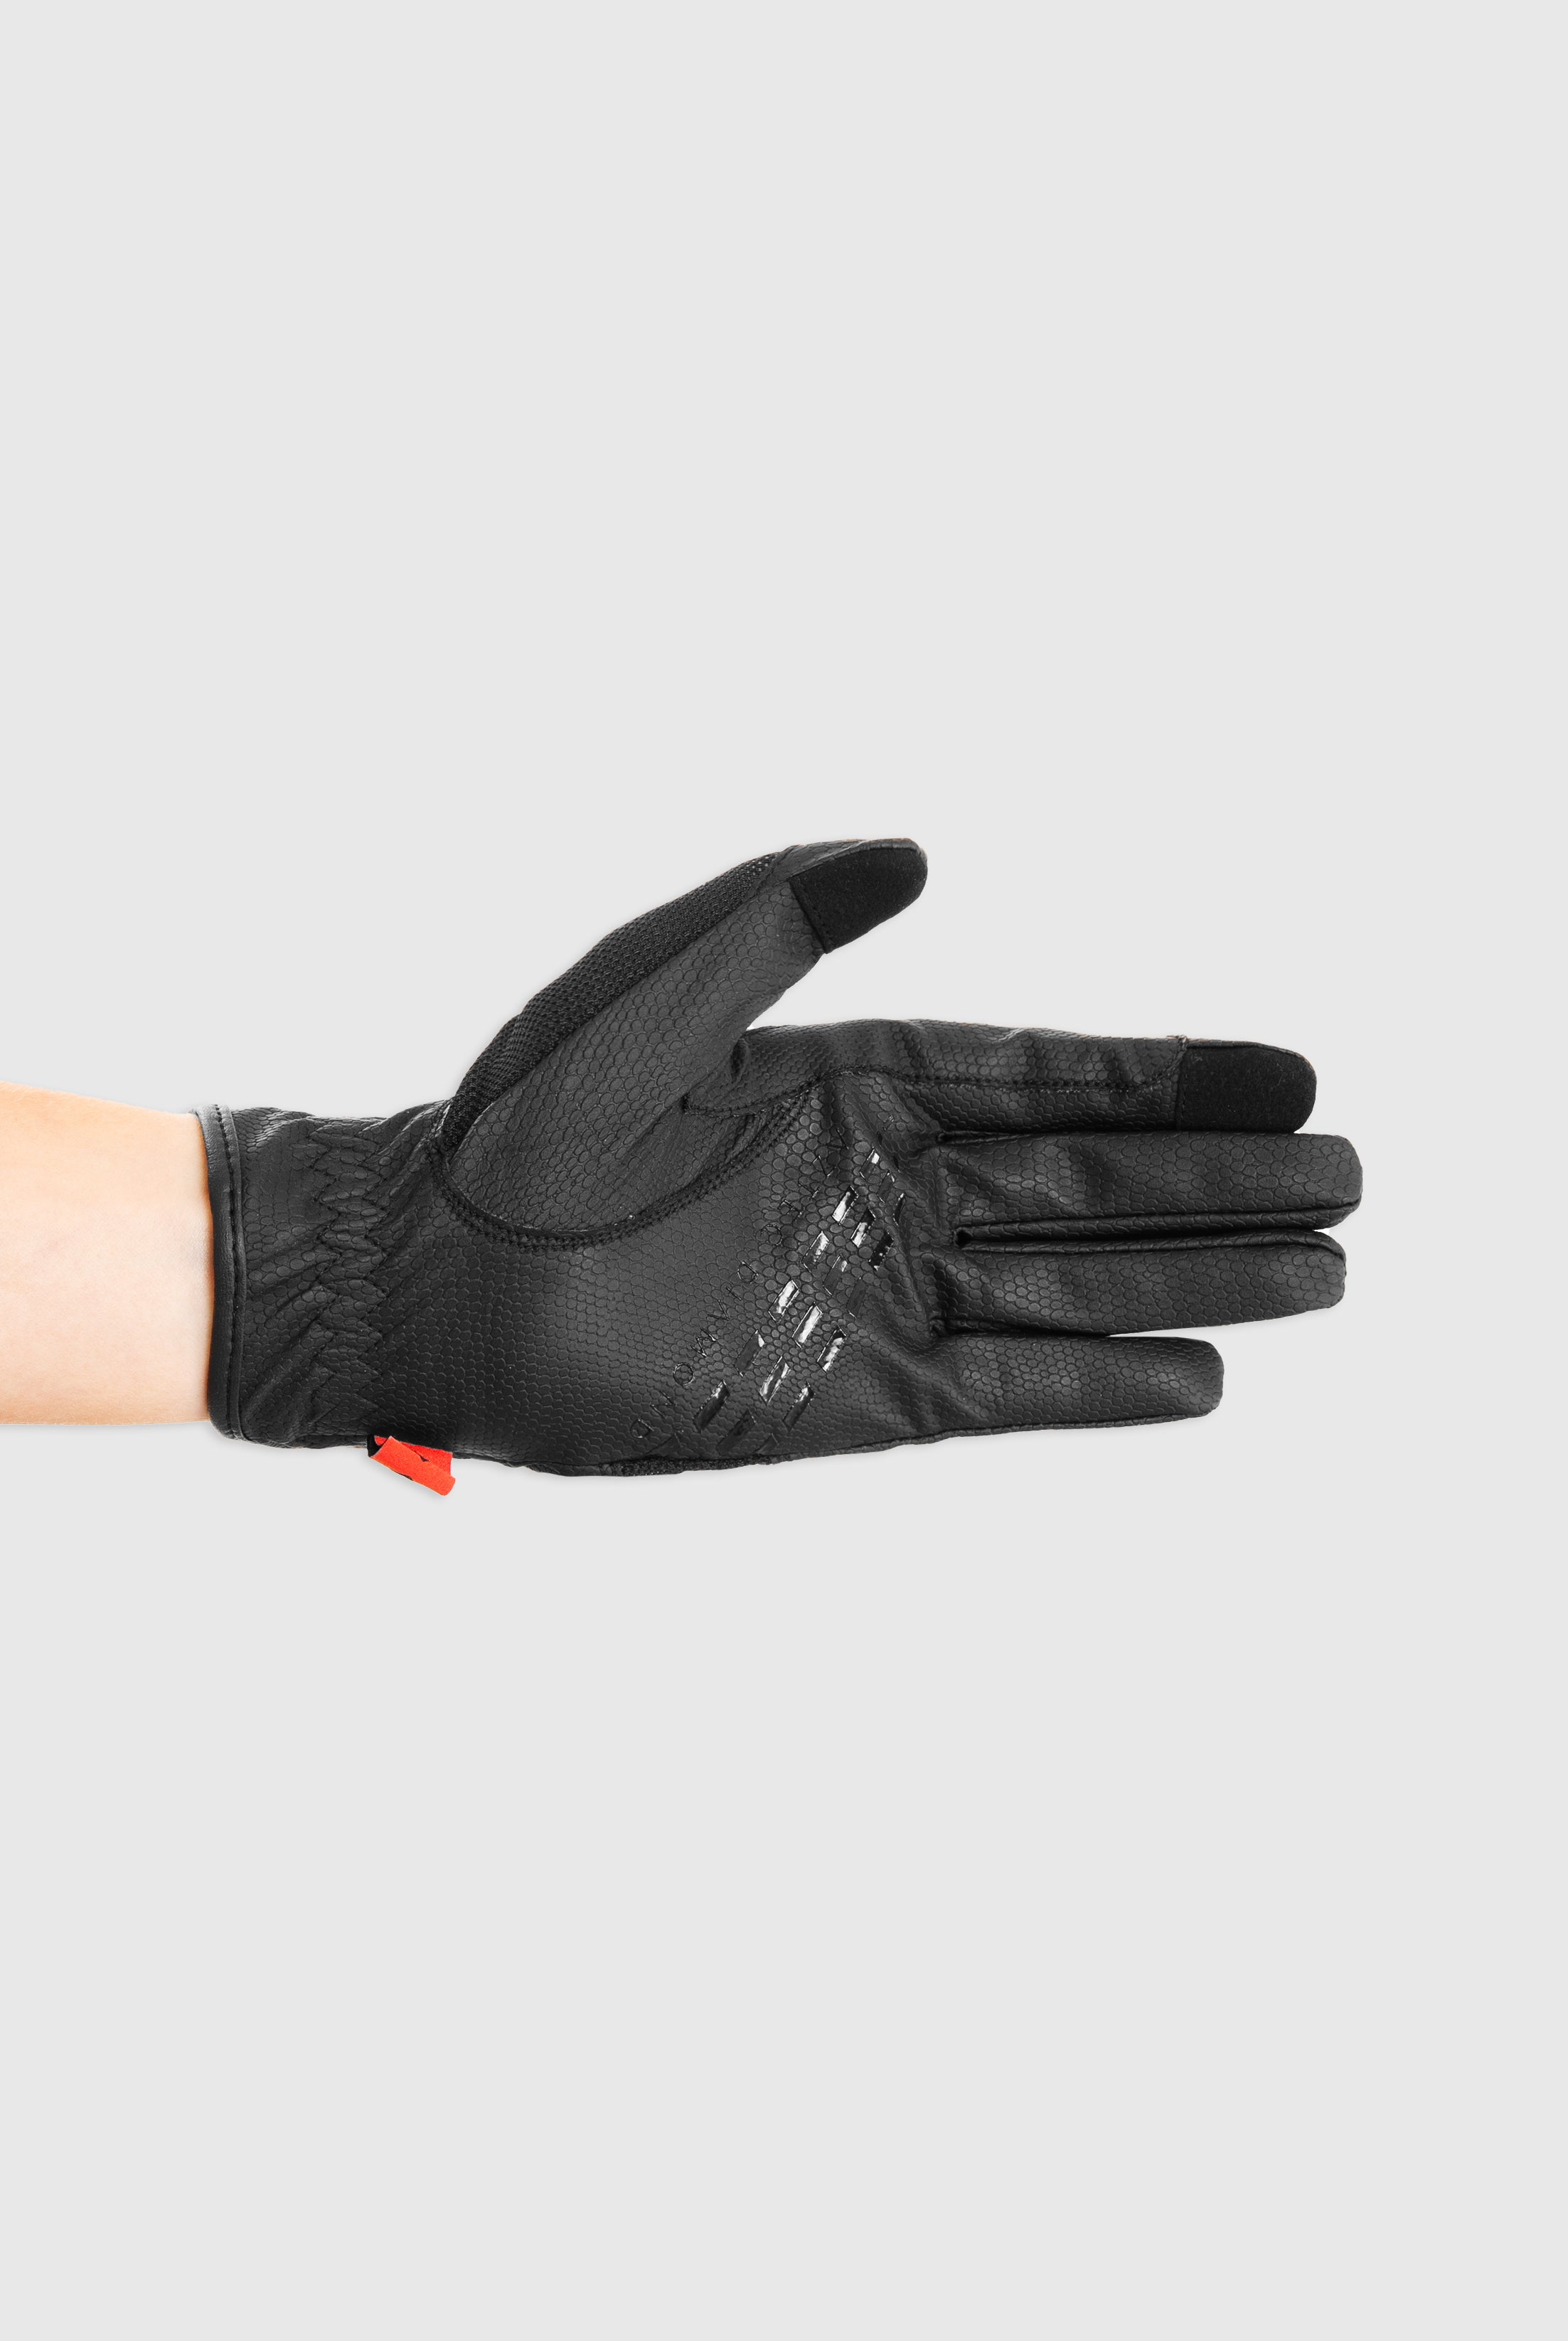 Black Pro Grip Riding Glove